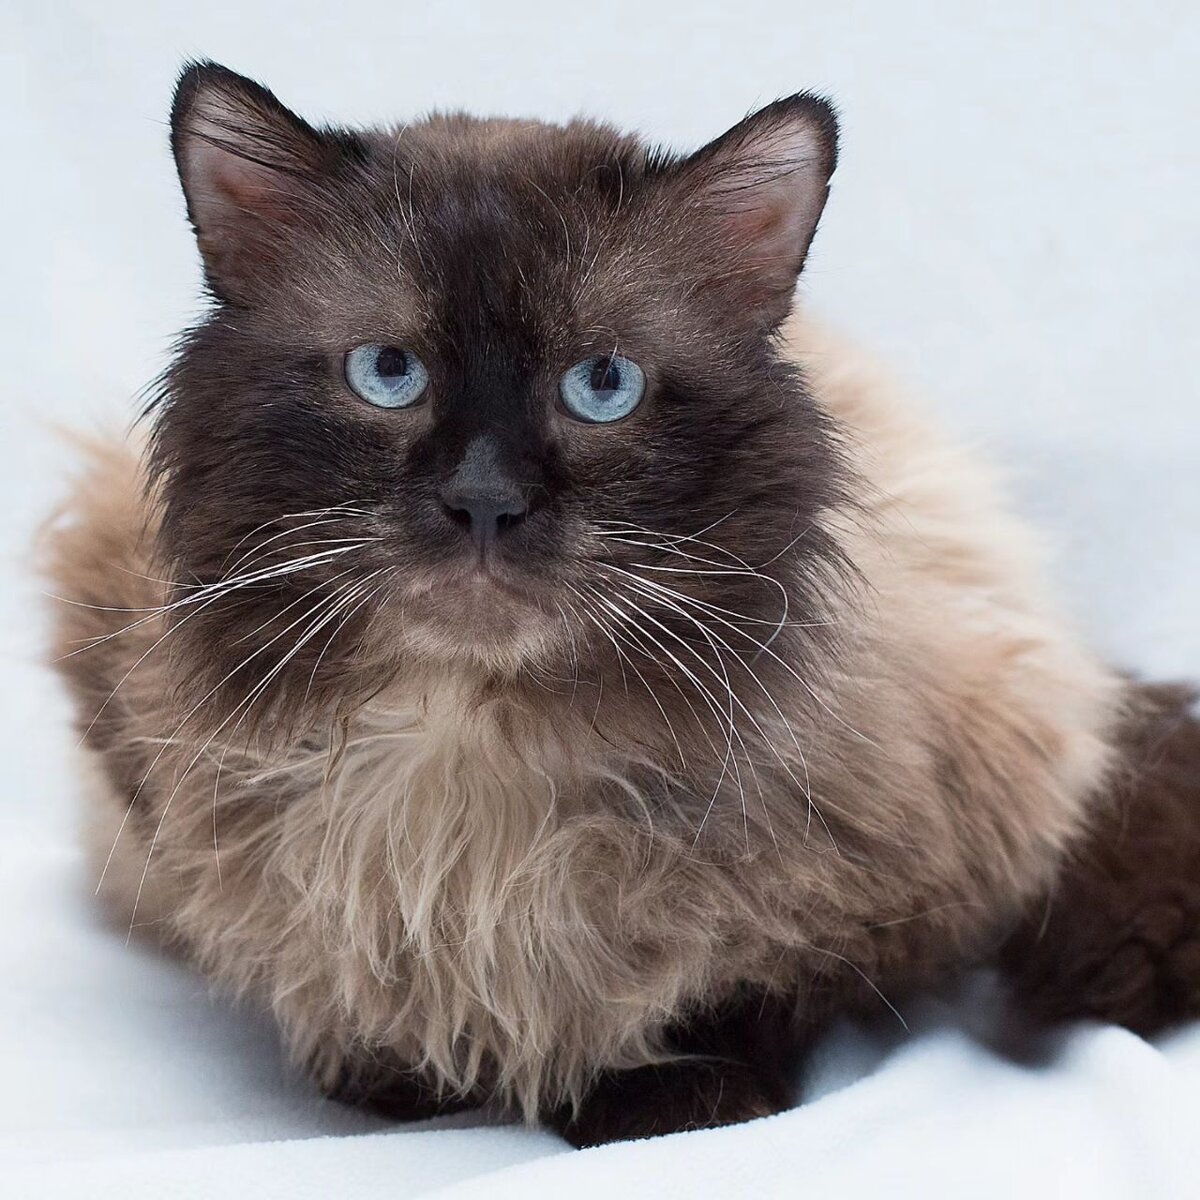  Зимой, в самый мороз, на территории одного ЖК жители заметили "странного" кота.